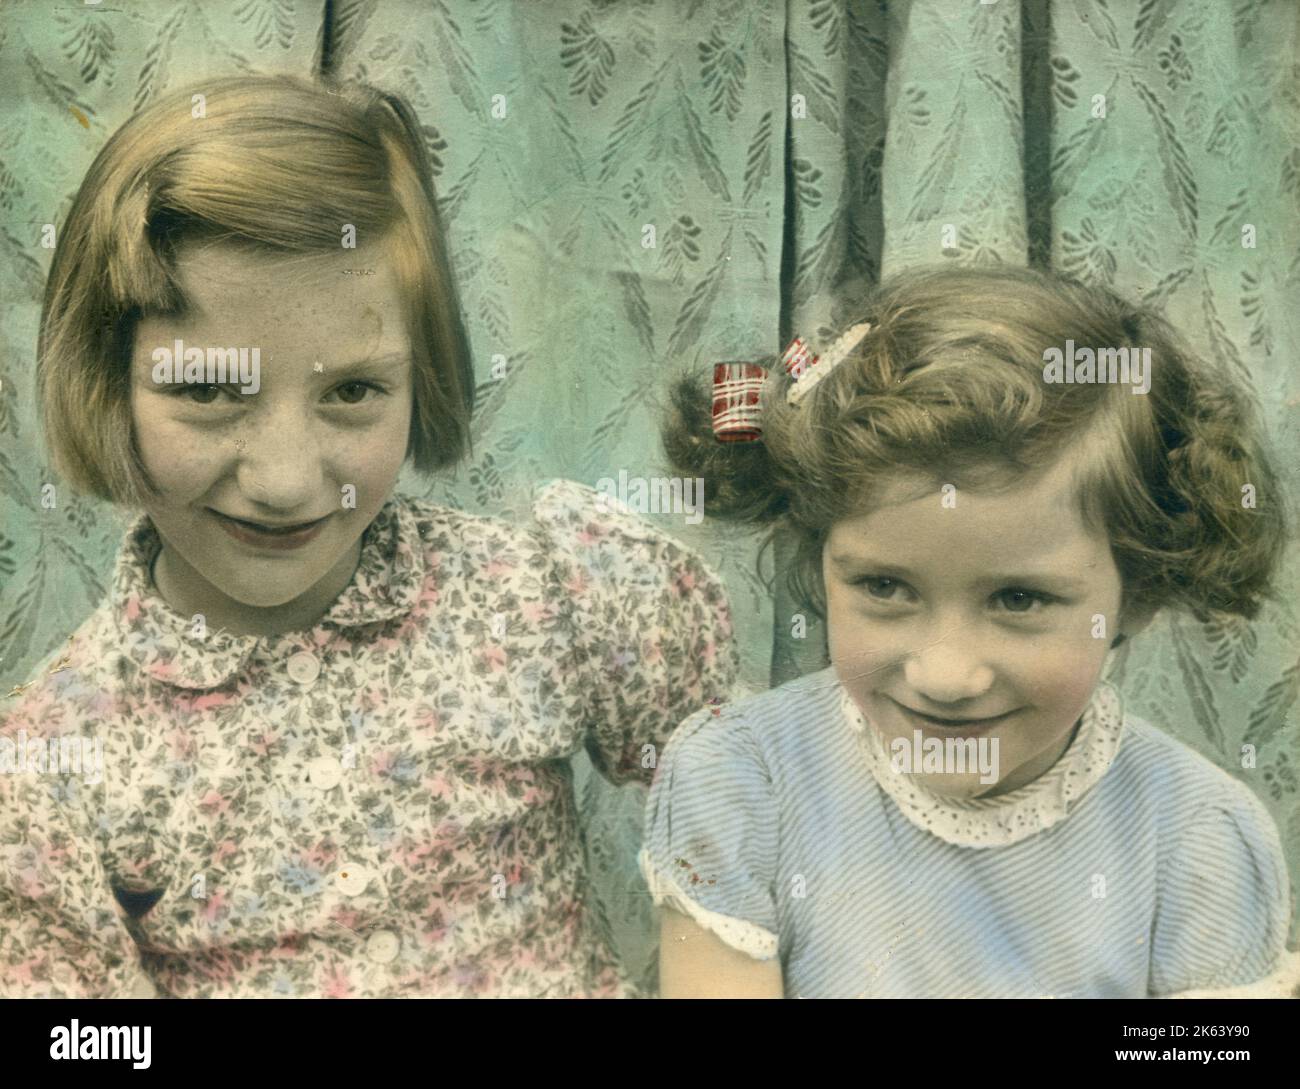 Entzückende Farbaufnahme von zwei kleinen Mädchen, möglicherweise Schwestern, die zusammen sitzen. Datum: ca. 1950 Stockfoto